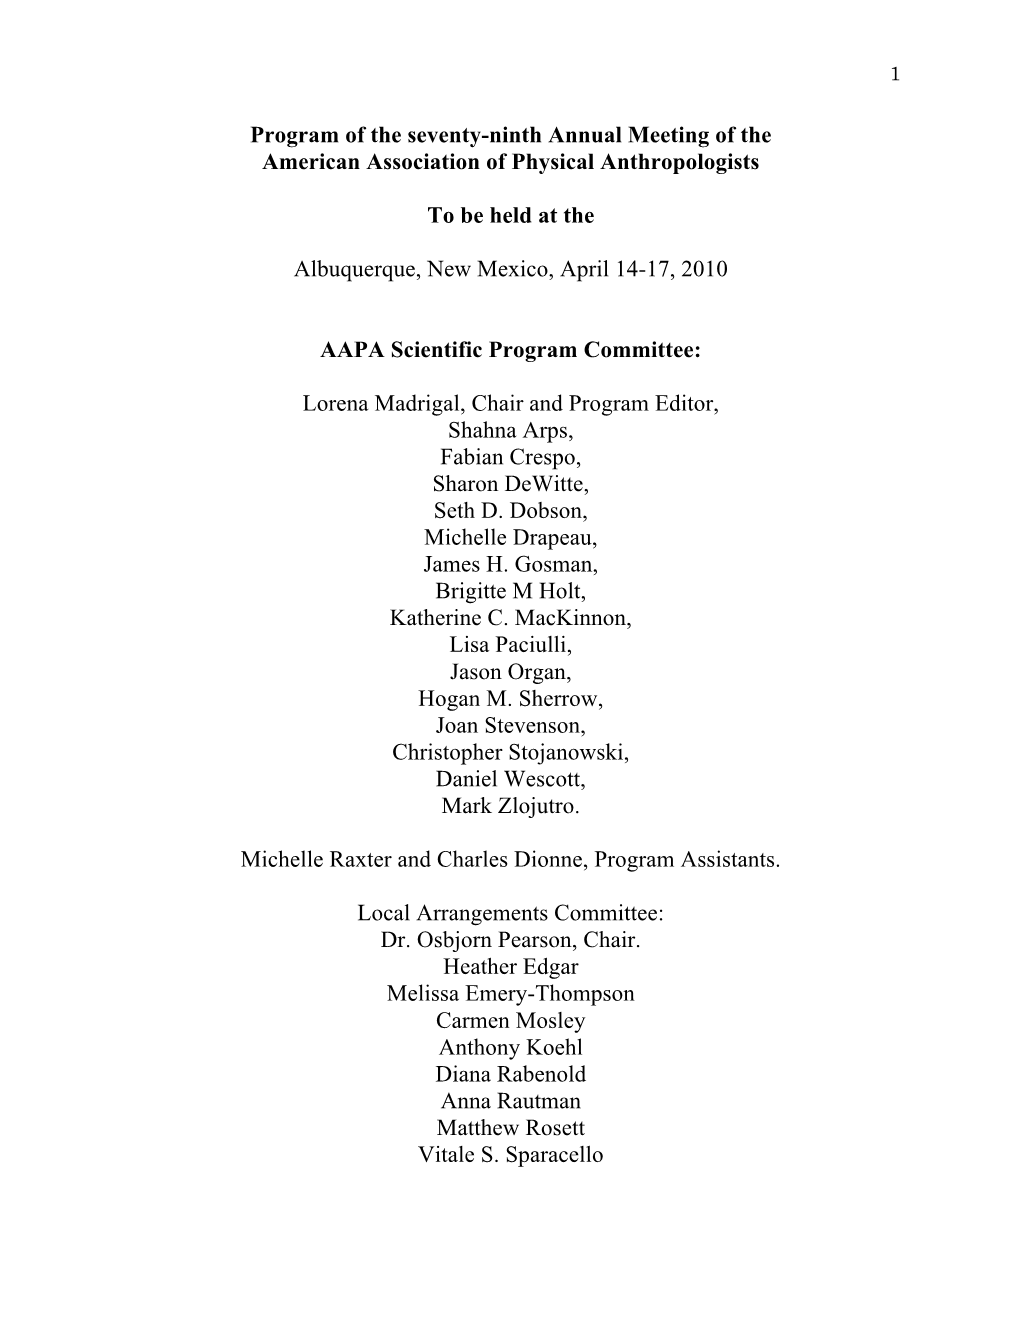 Program of the 2010 AAPA Meetings